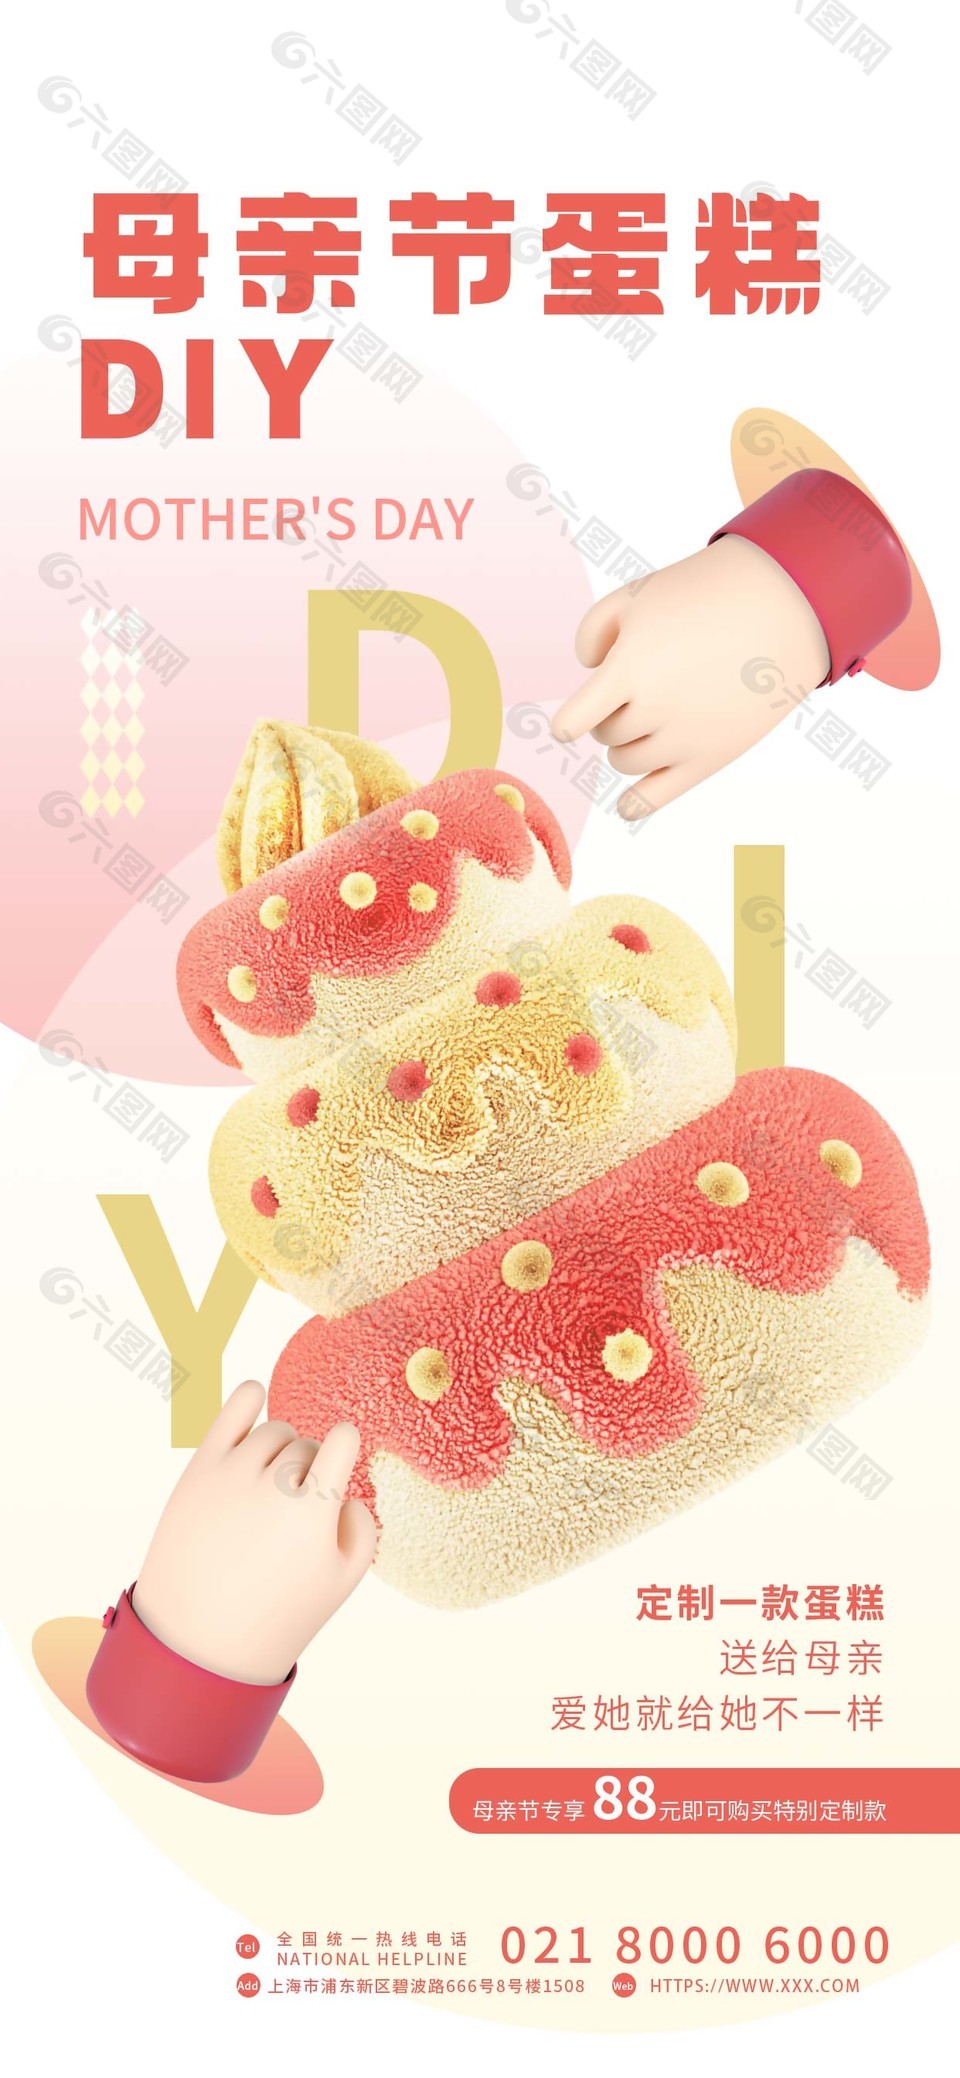 母亲节蛋糕DIY活动宣传海报设计